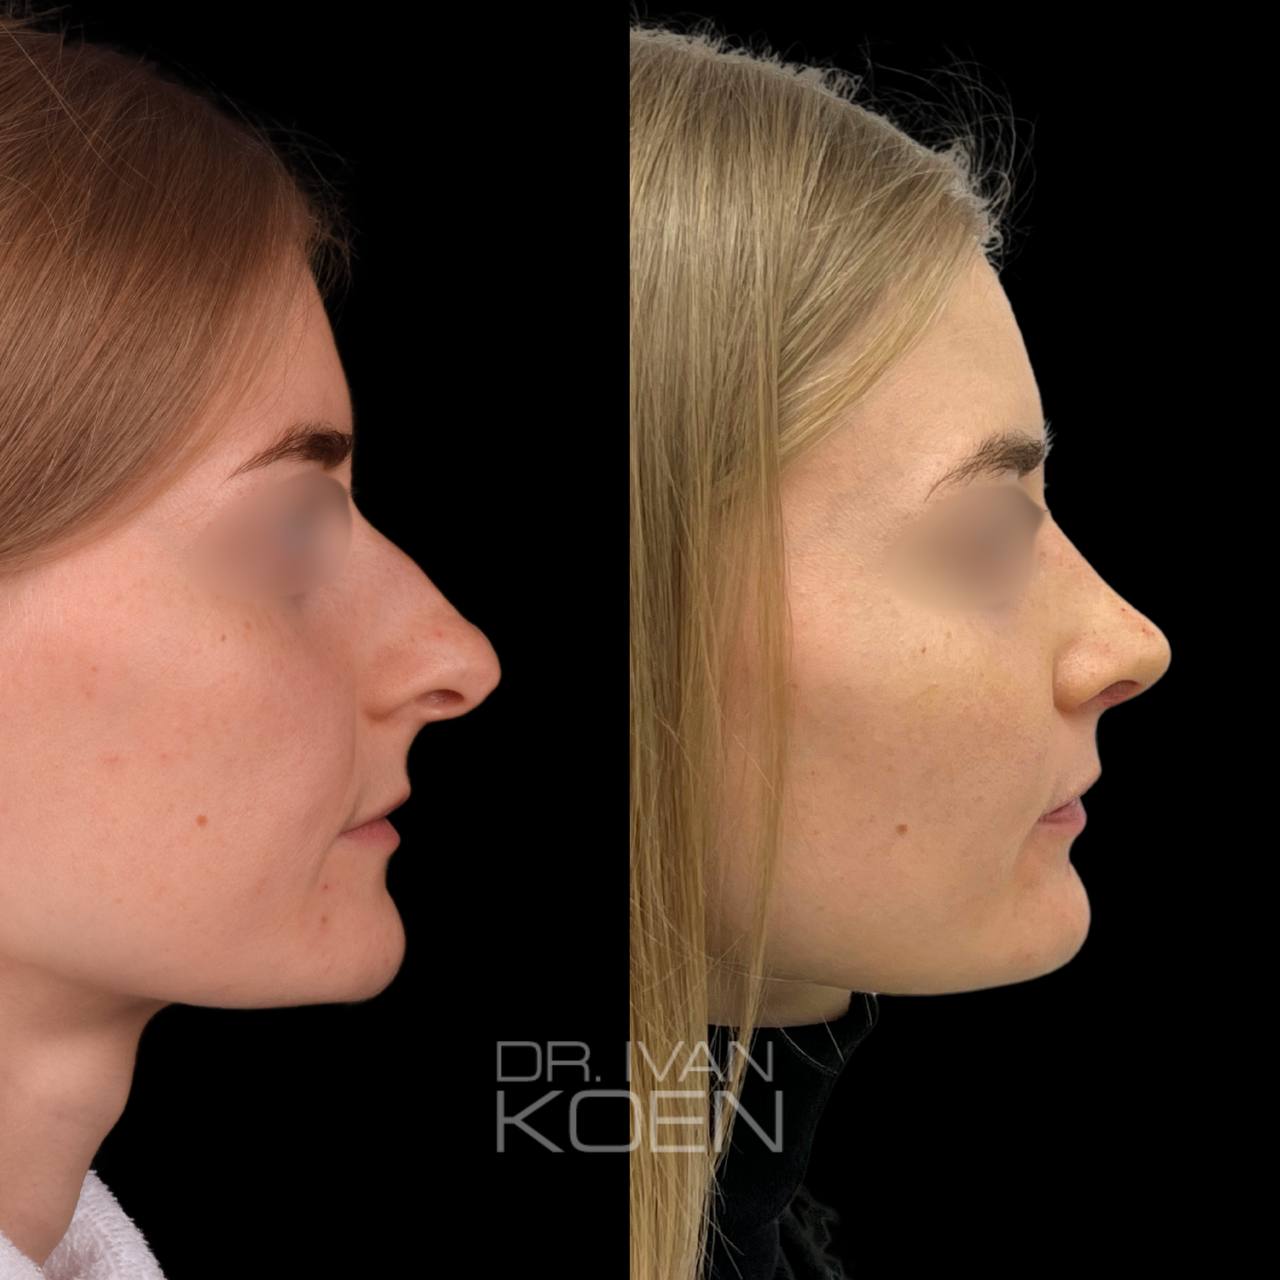 Ринопластика носа: как правильно подготовиться к операции